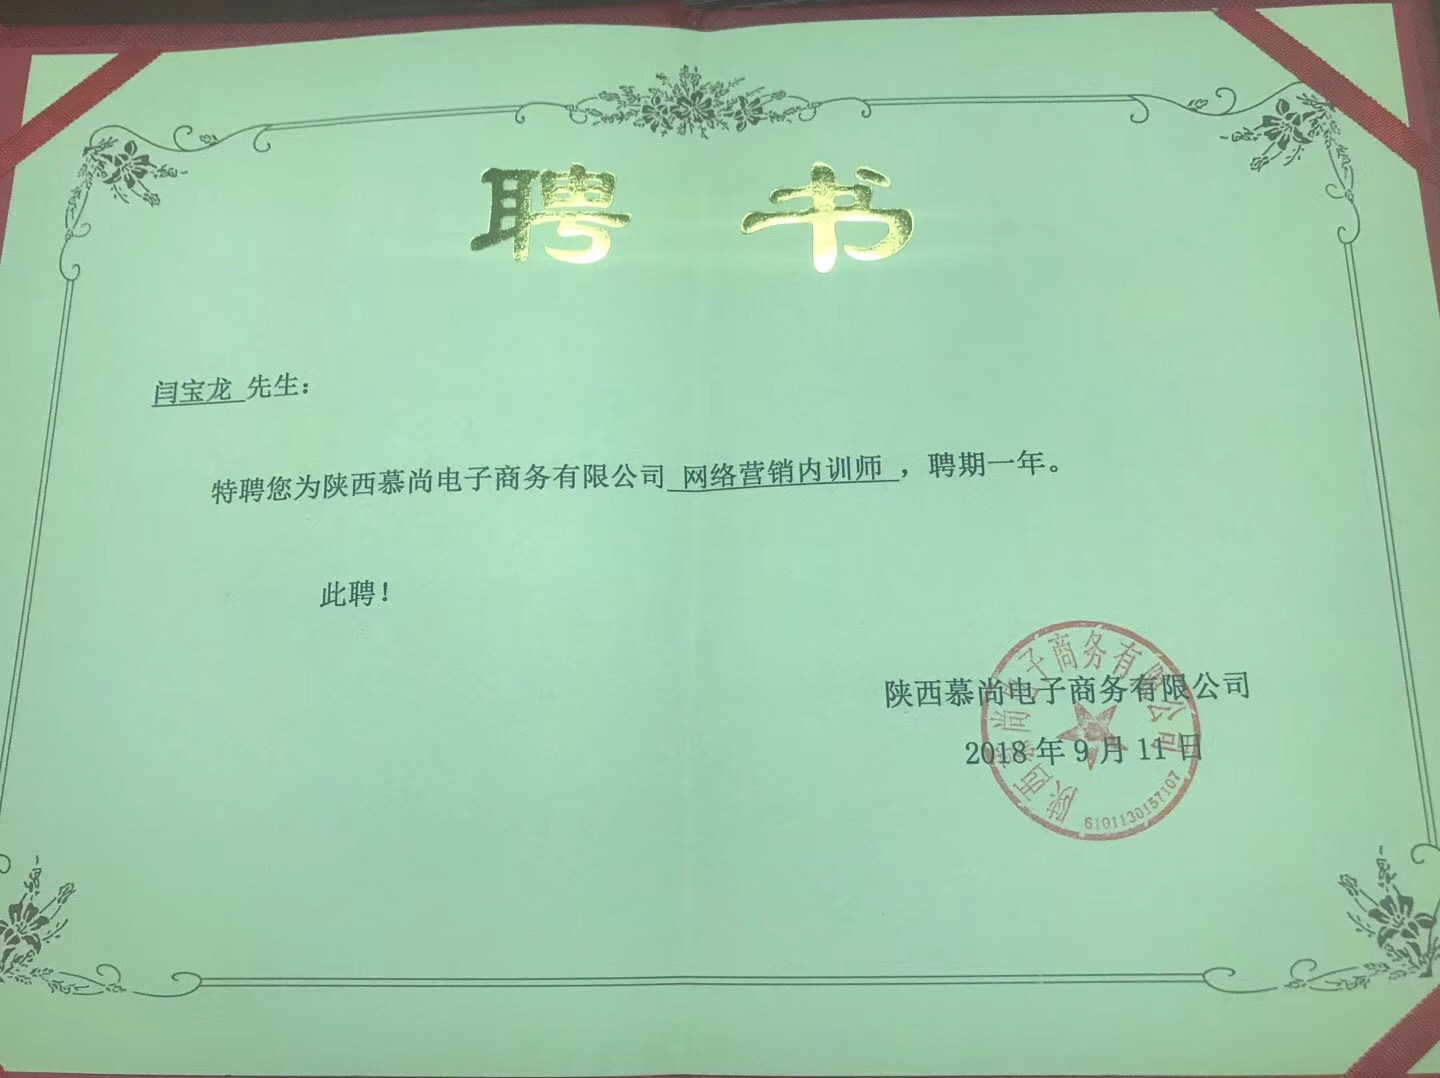 闫宝龙被西安慕尚电子商务公司聘请为SEO优化培训师